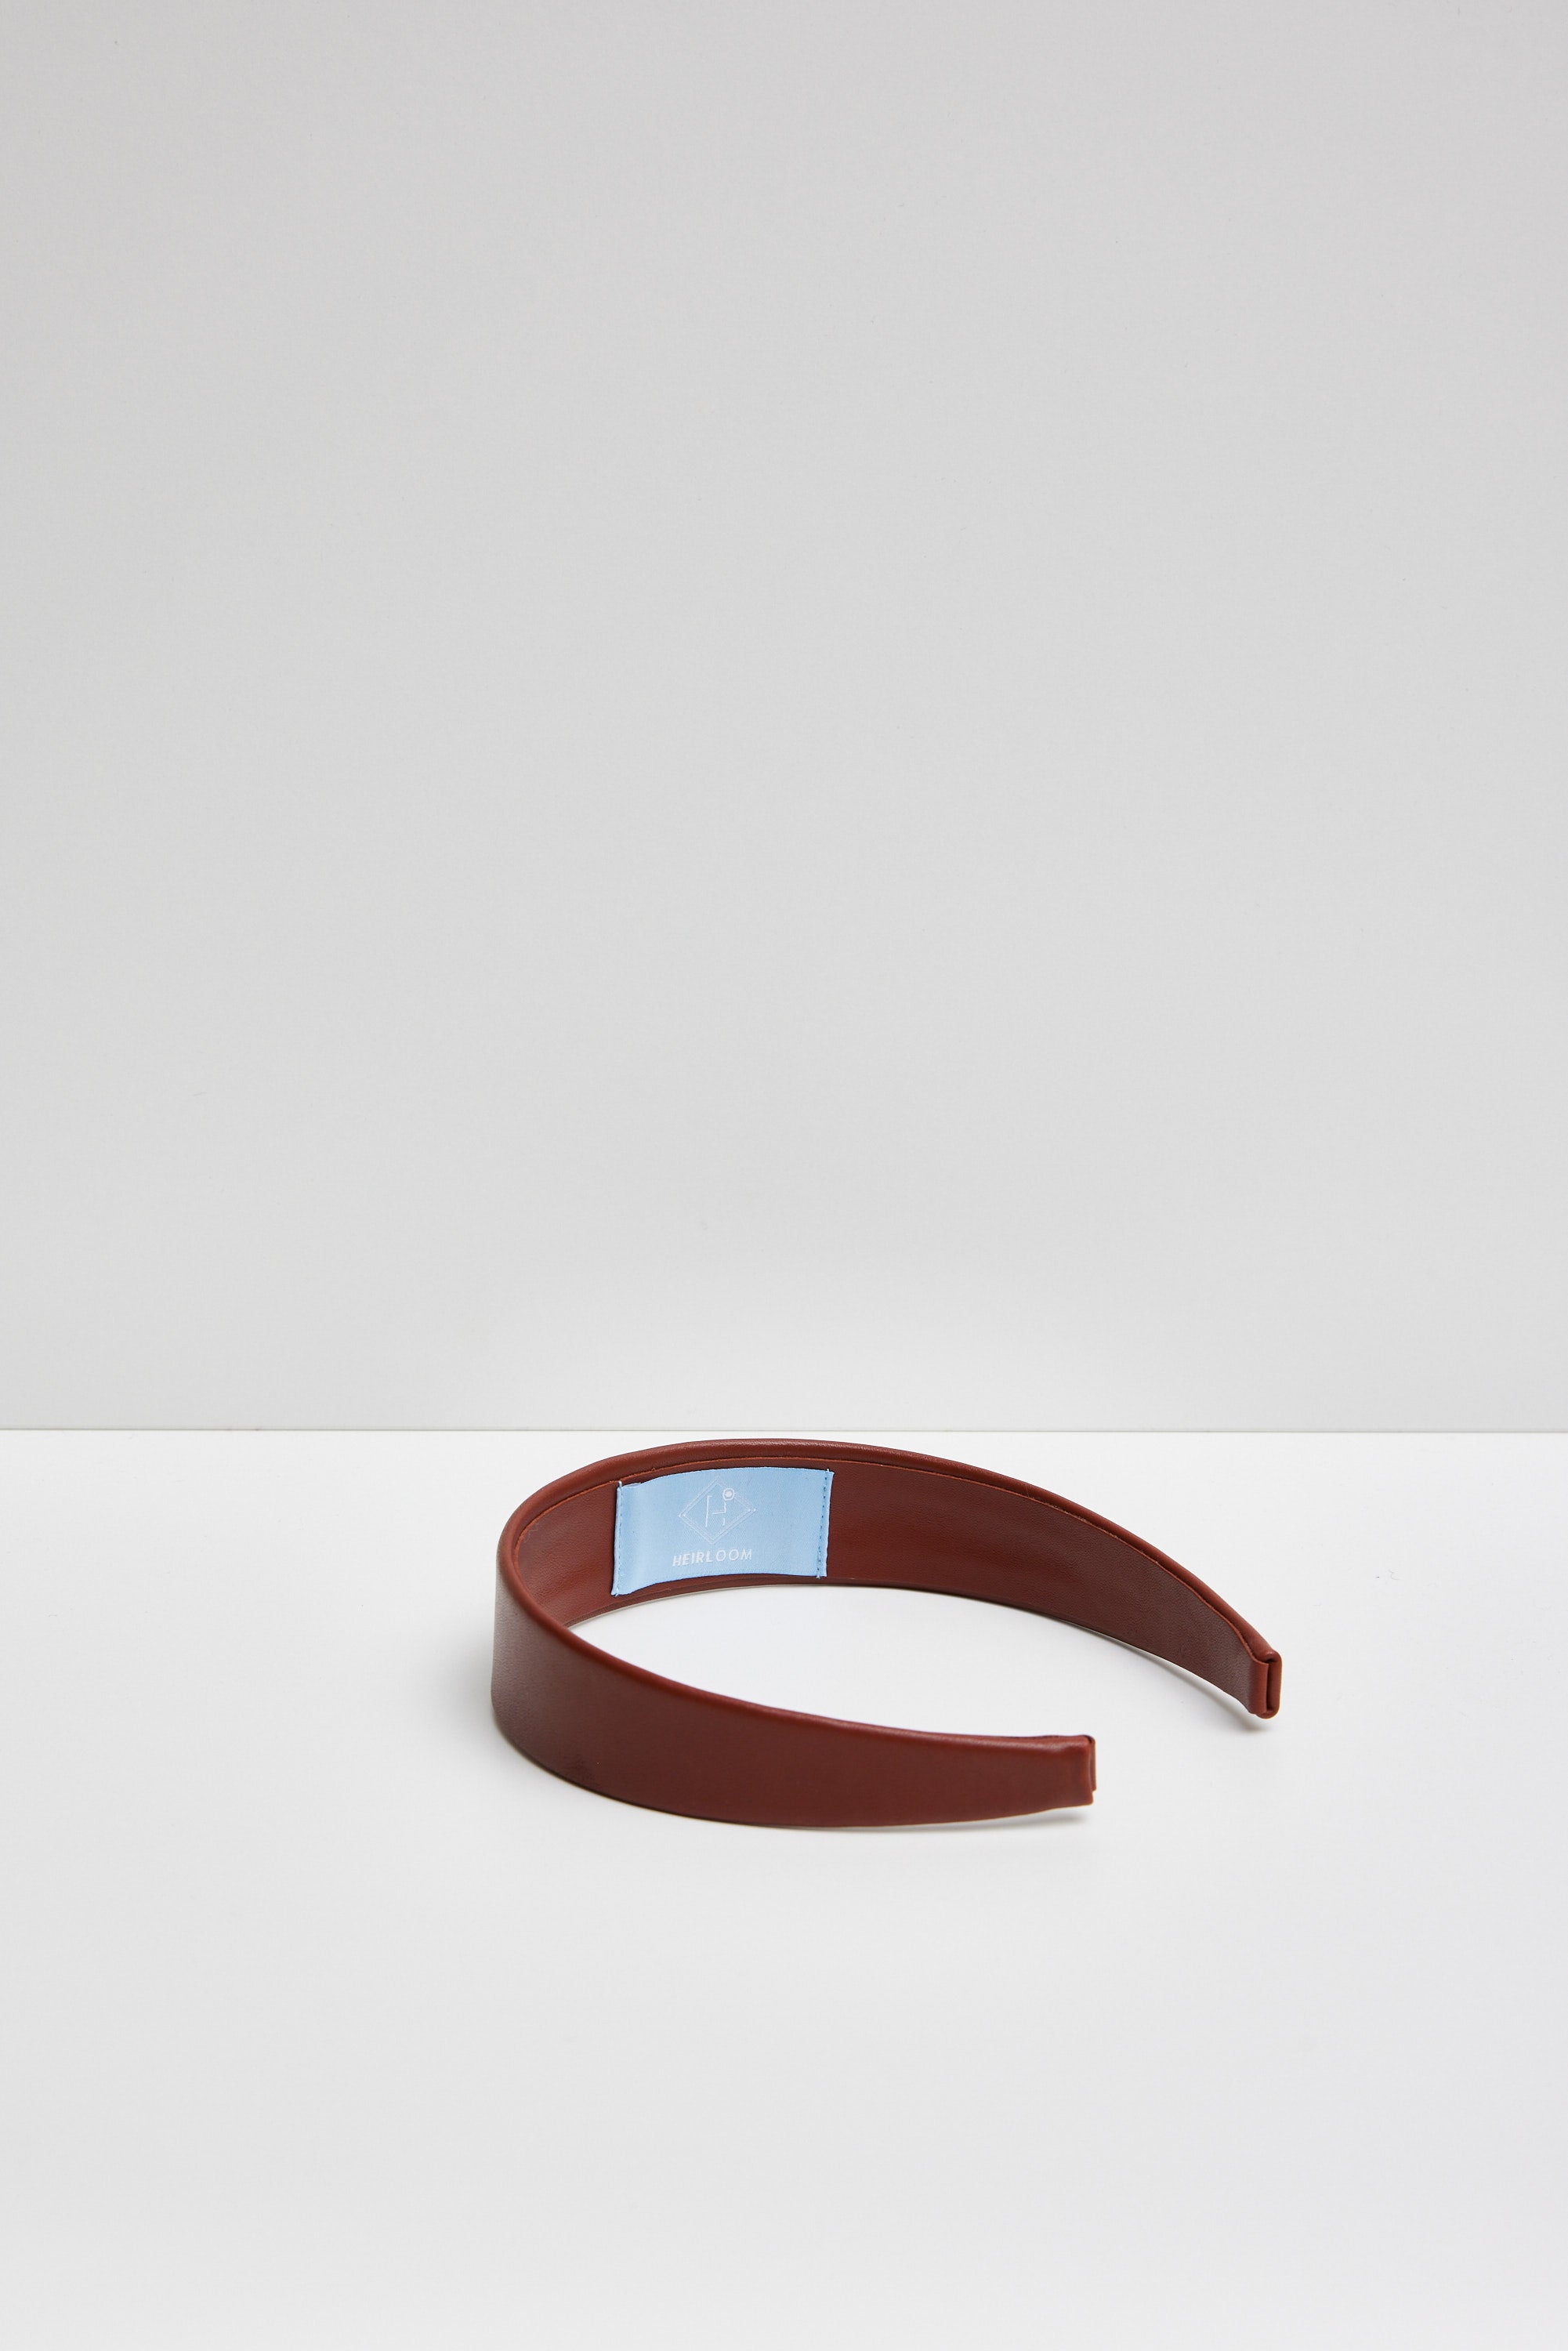 Silken - bandeau minimaliste en cuir - 4 options de couleur